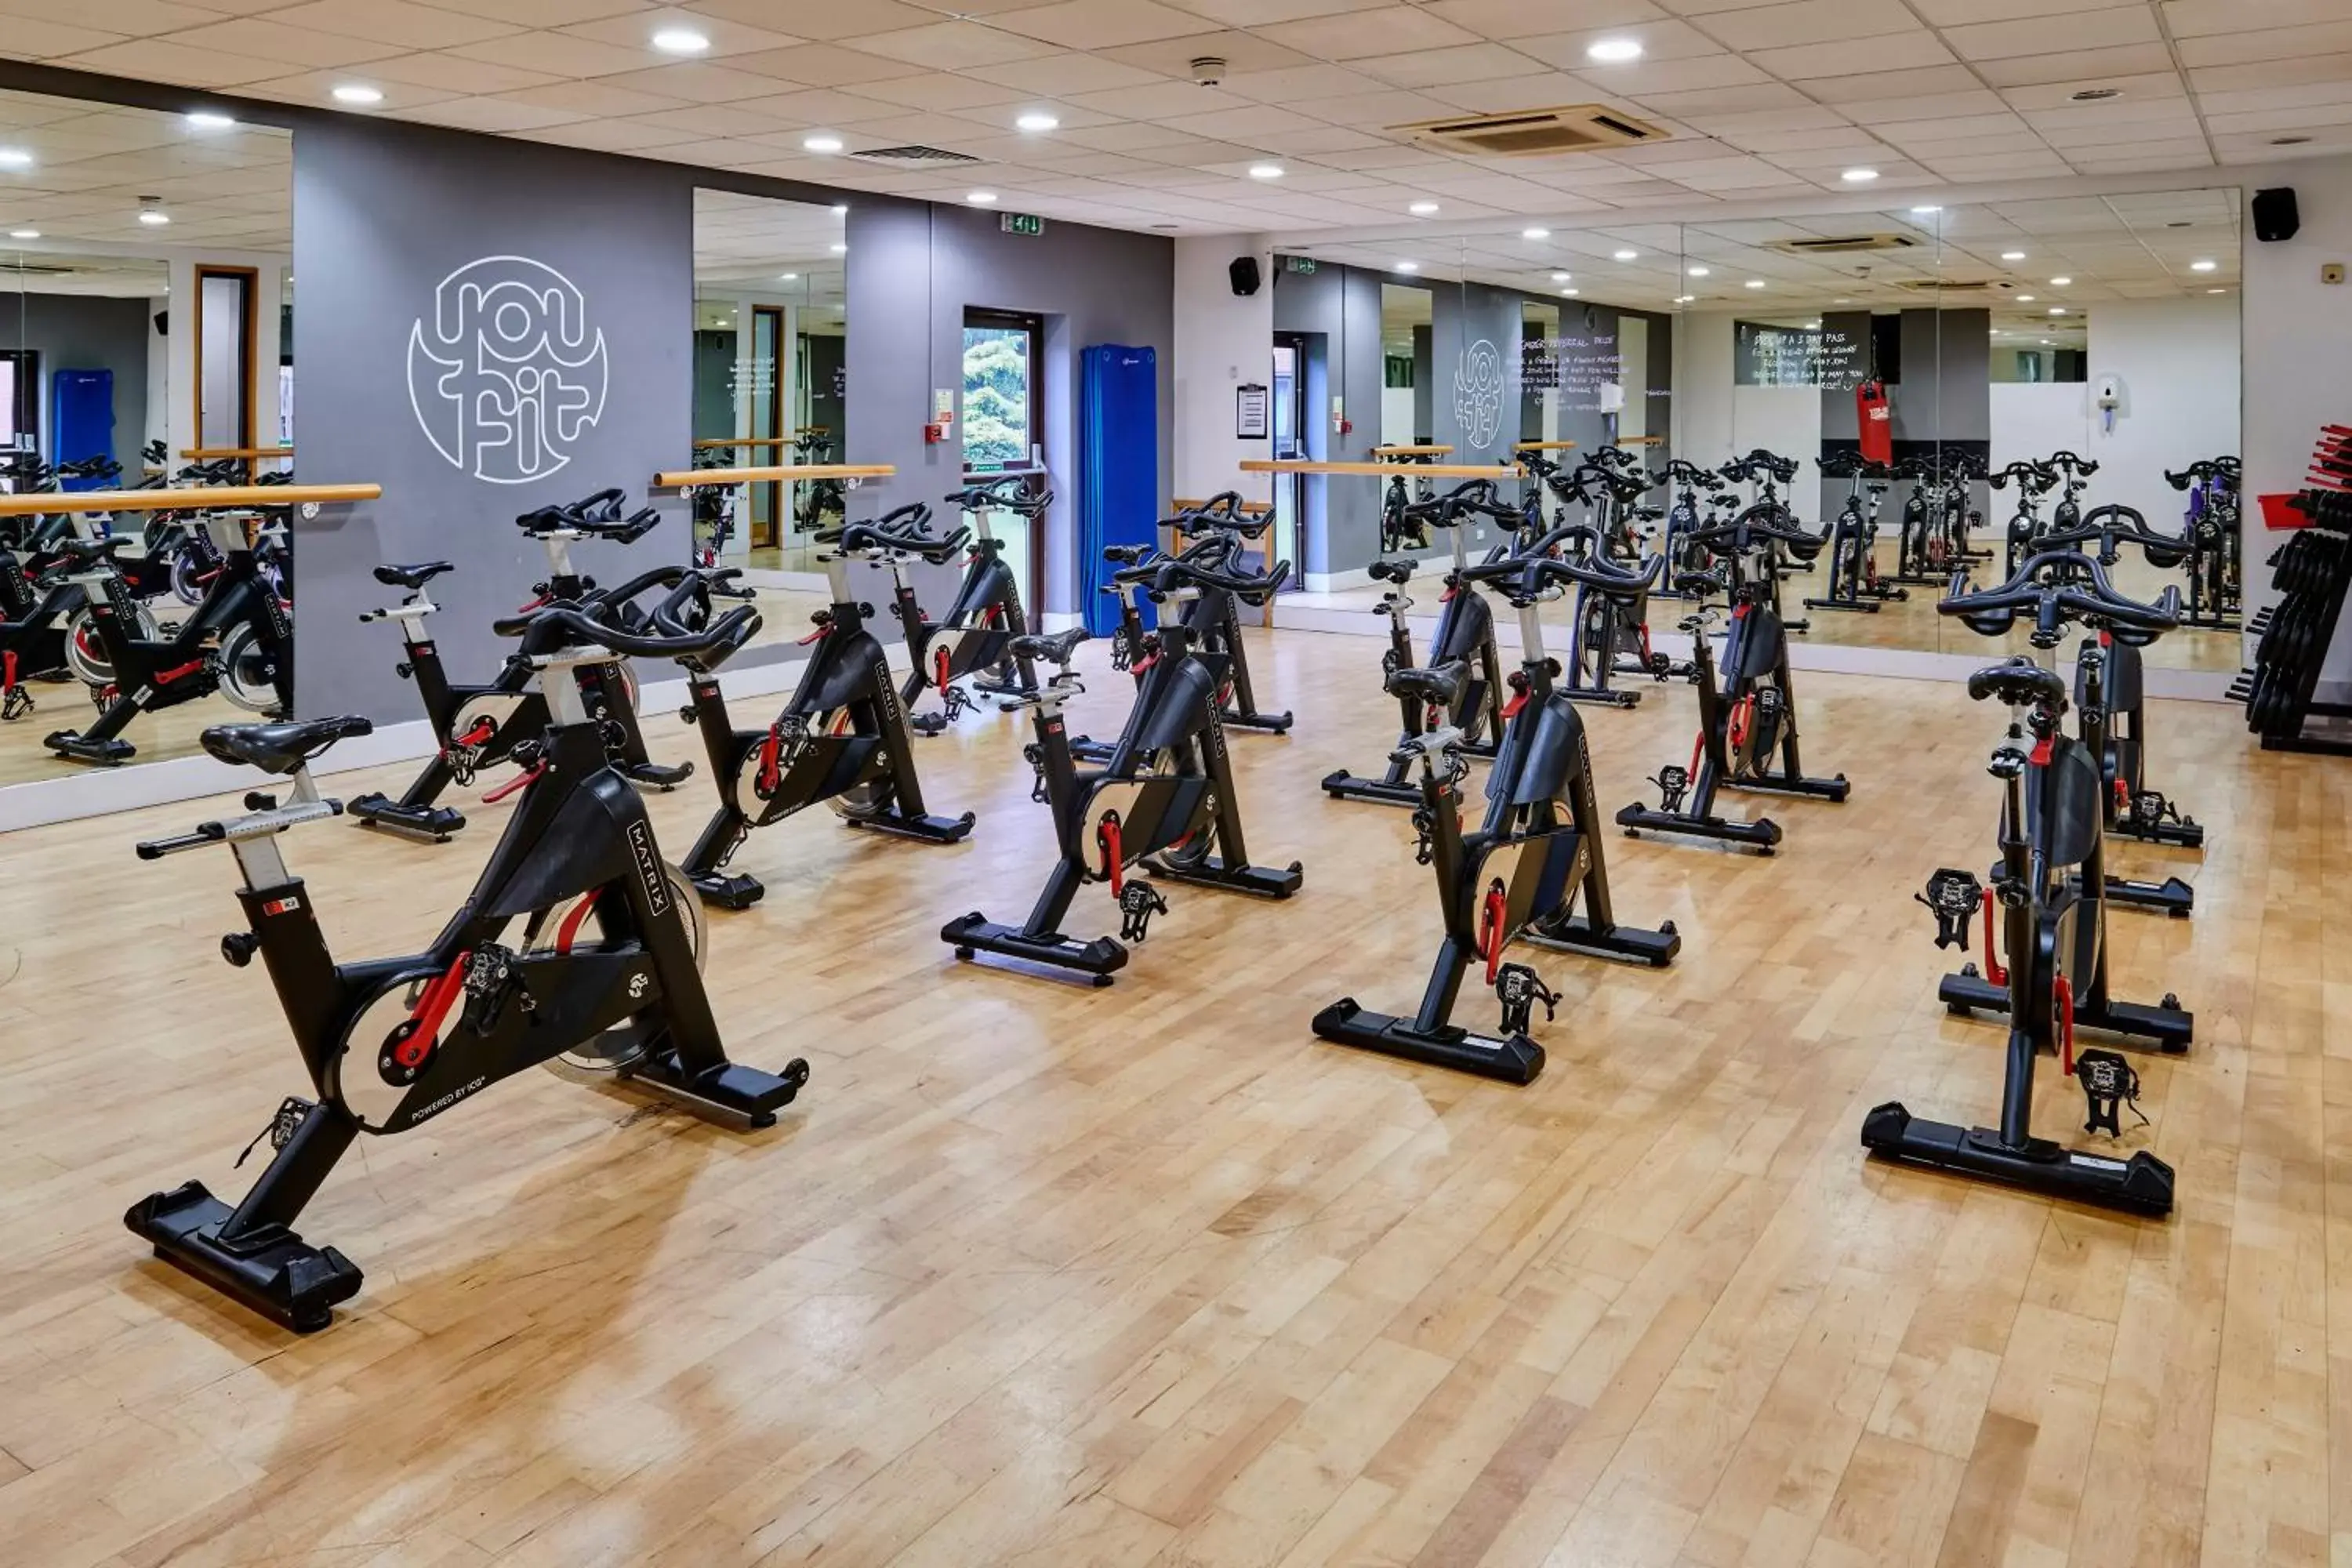 Fitness centre/facilities, Fitness Center/Facilities in Holiday Inn Haydock, an IHG Hotel